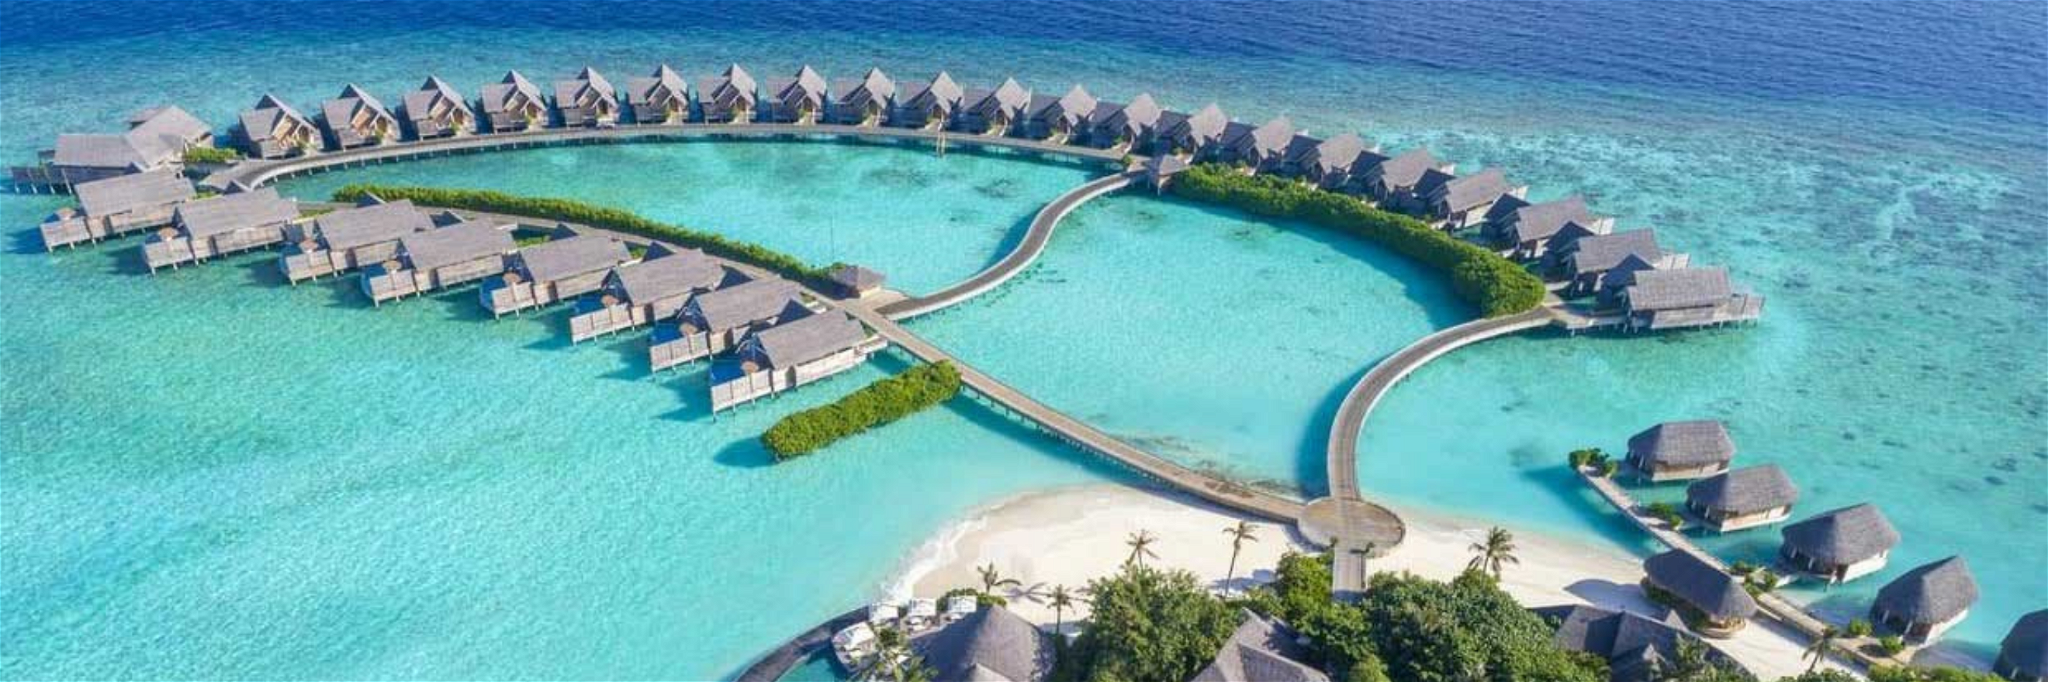 The Best Island Resorts around the Globe